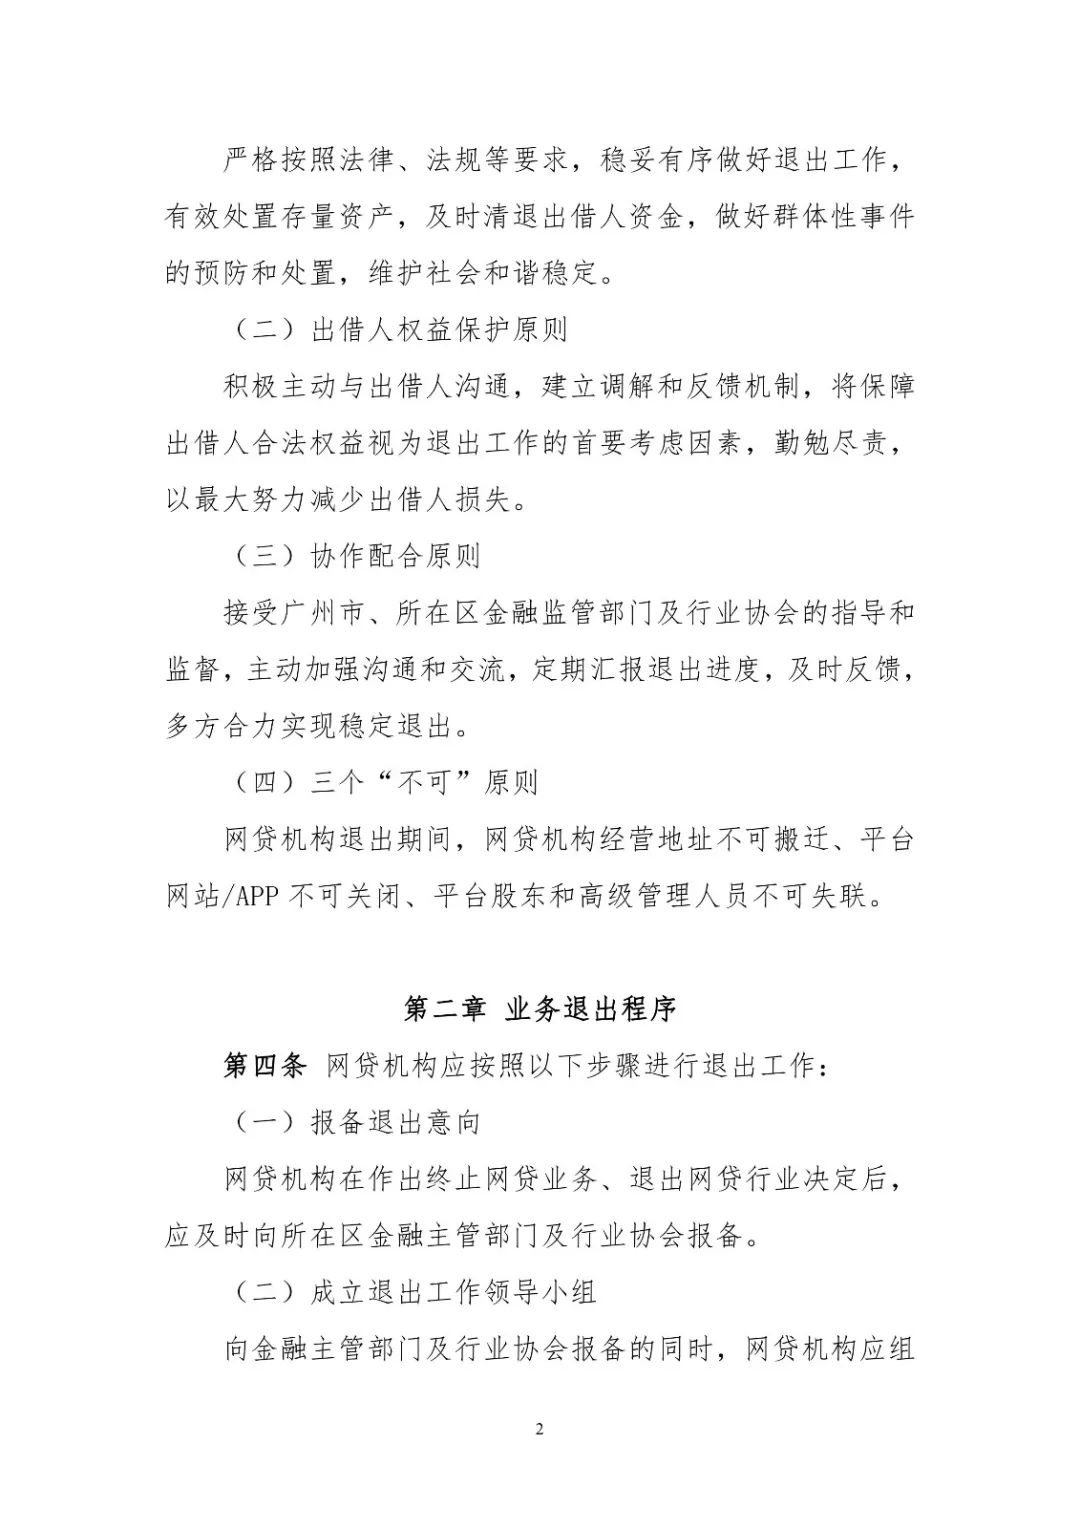 广州互金协会发布P2P..业务退出指引，提出“三不可“原则